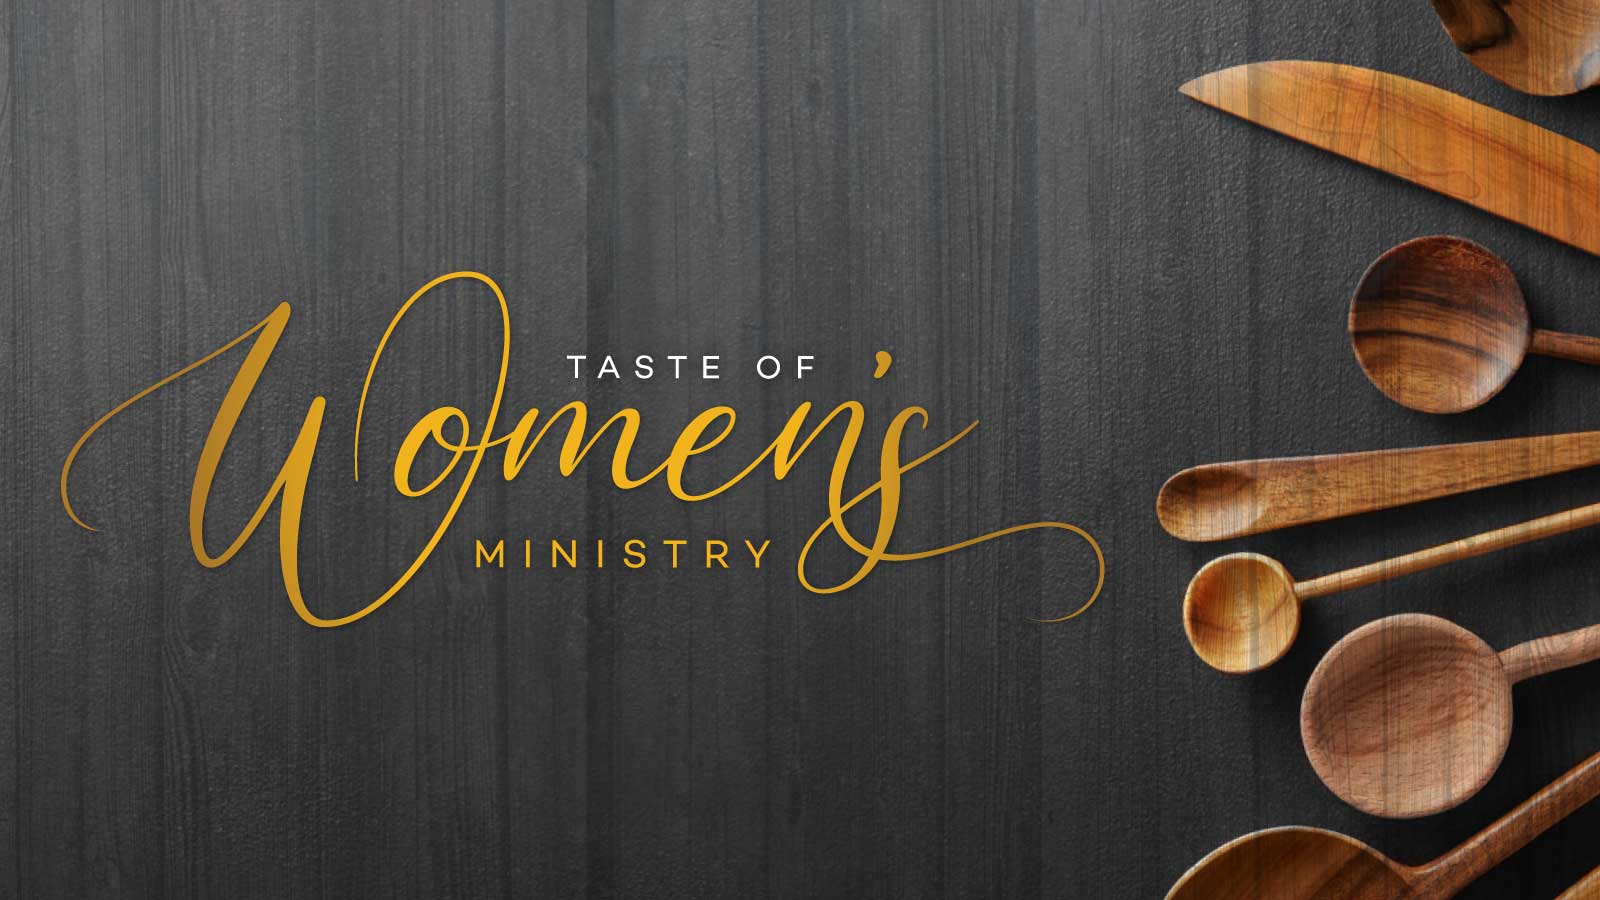 Taste of Women's Ministry Event